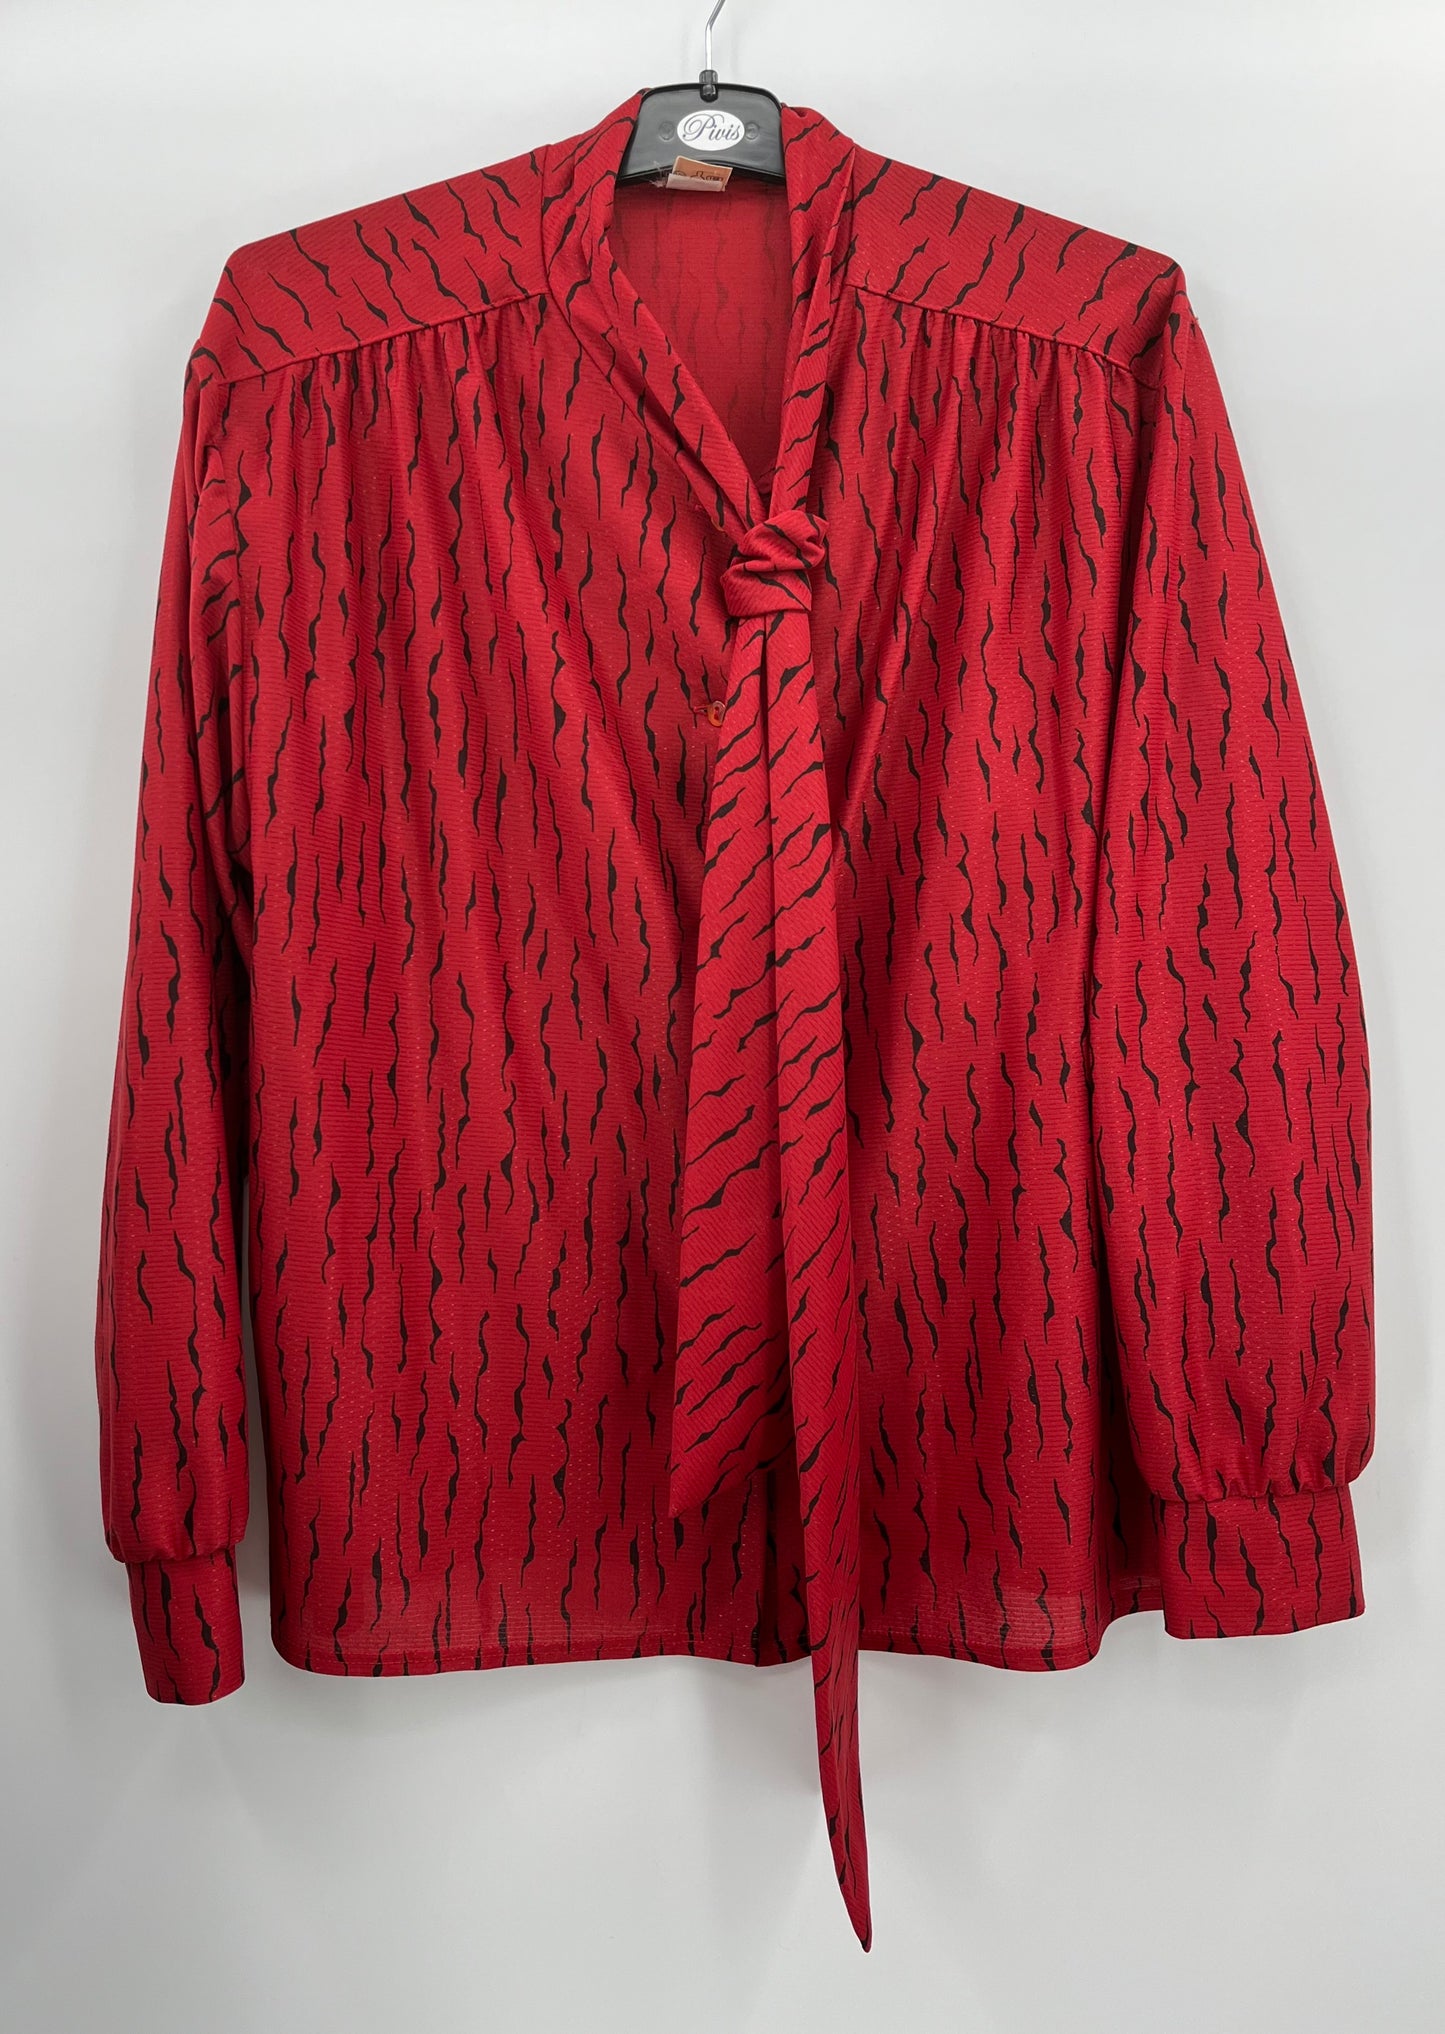 Oravais, punainen paitapusero, 80-luku, koko 40-42